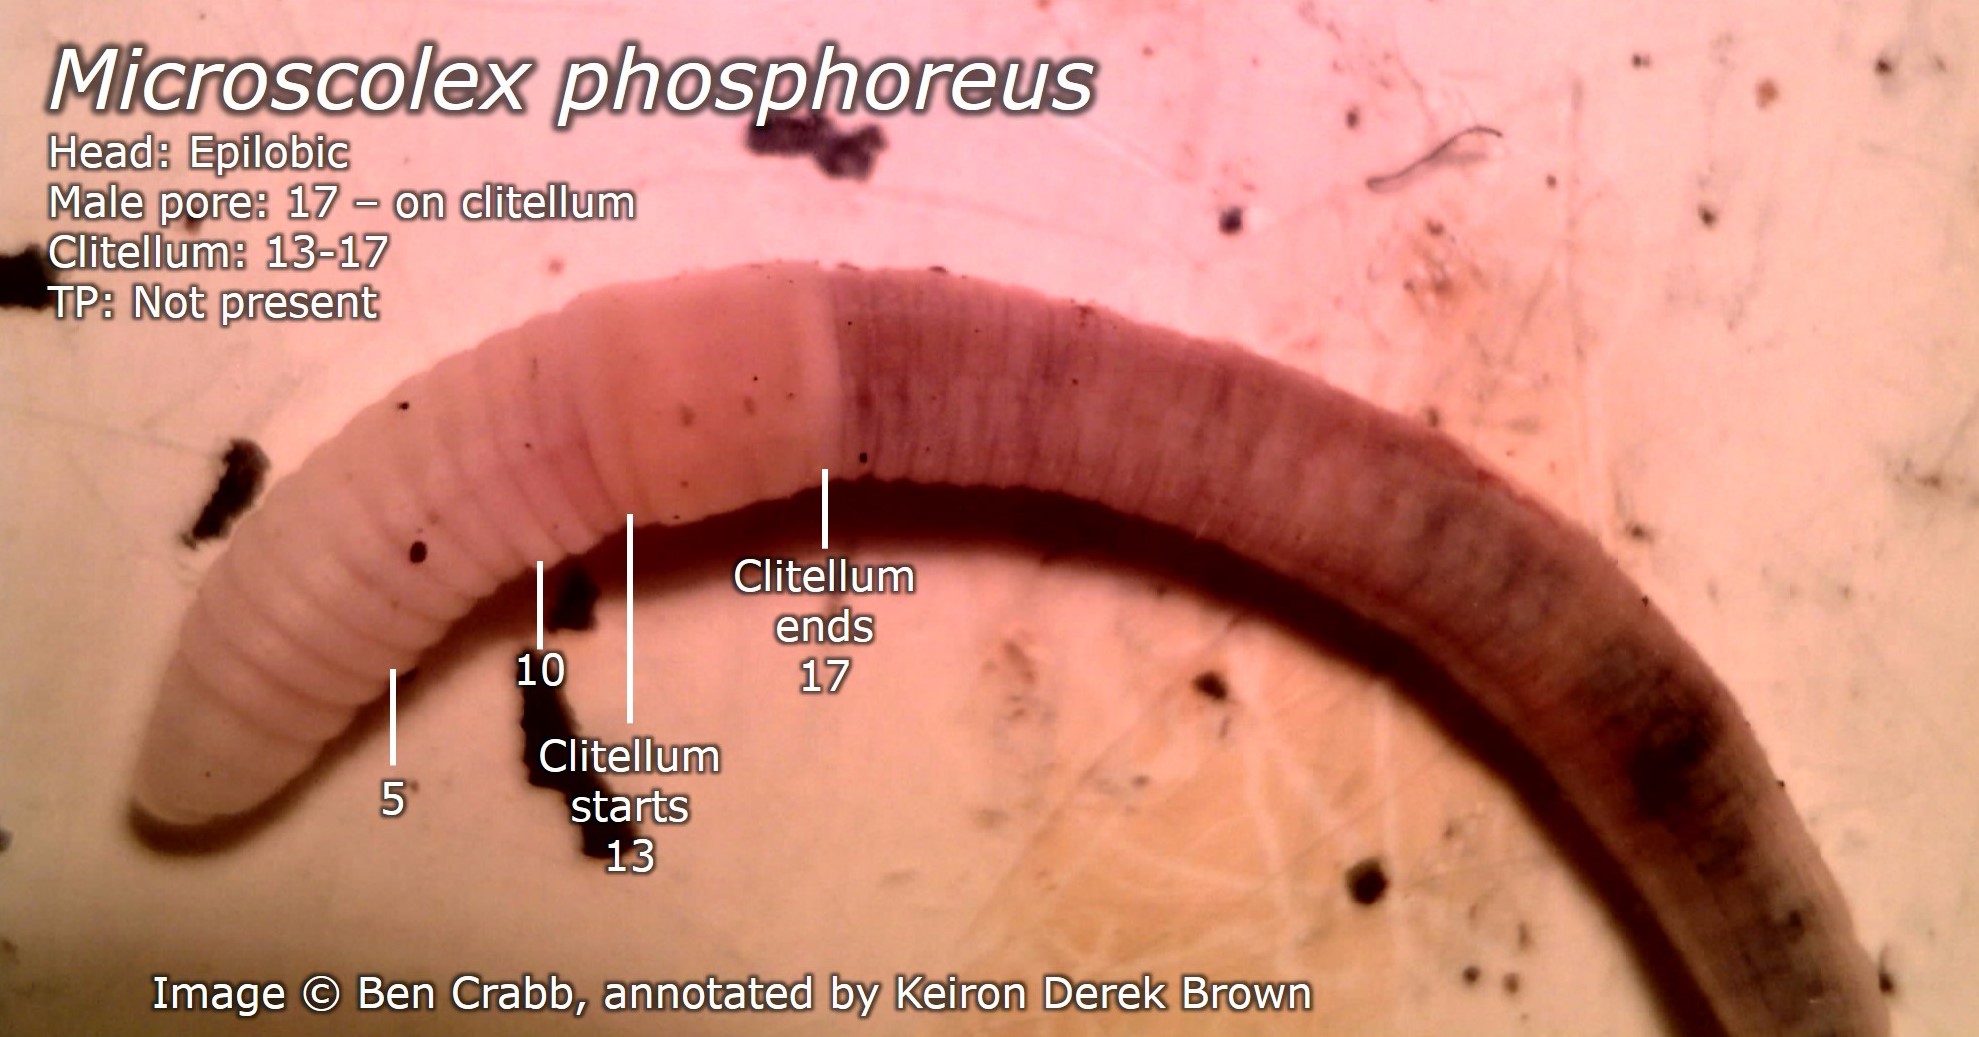 Microscolex phosphoreus